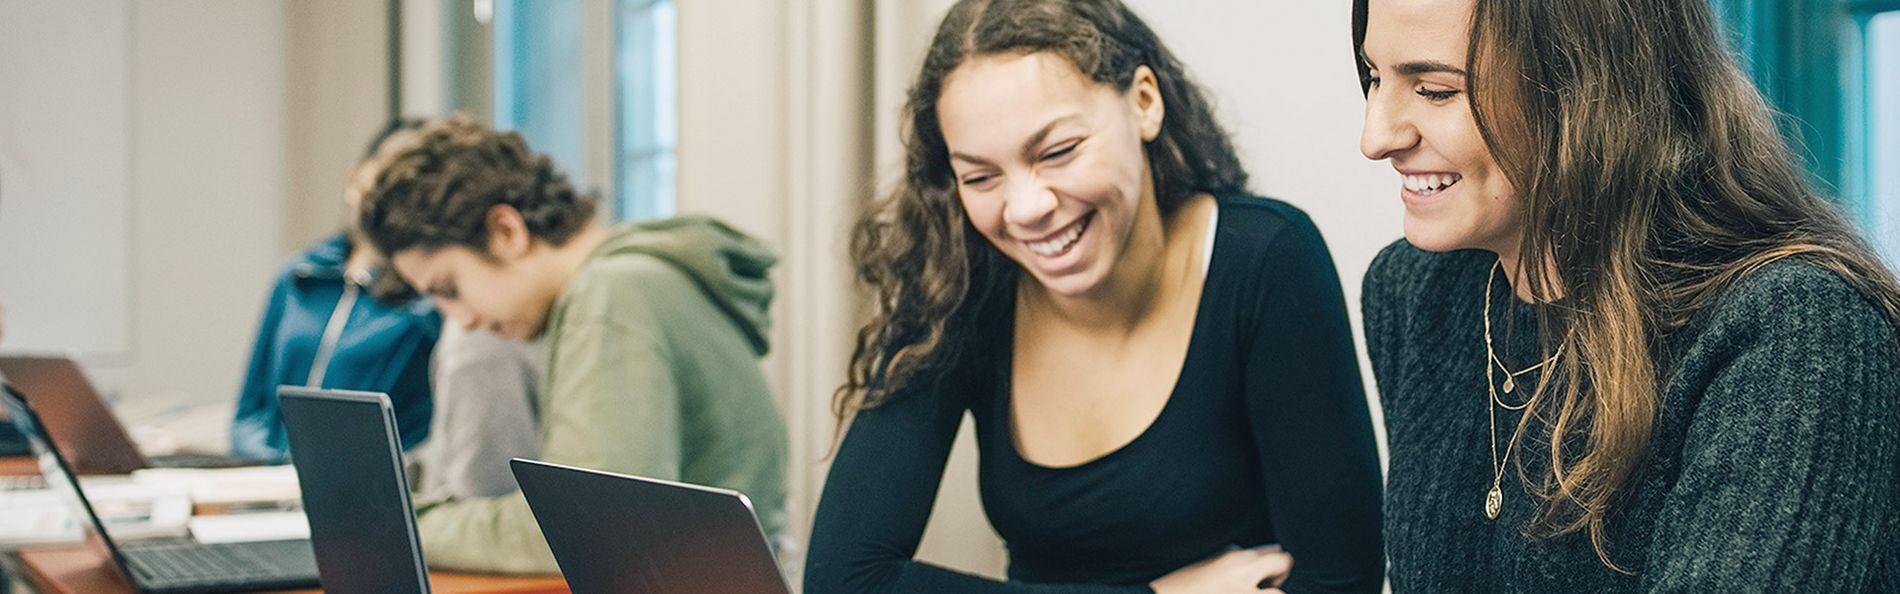 Zwei Schülerinnen sitzen am Laptop und lachen